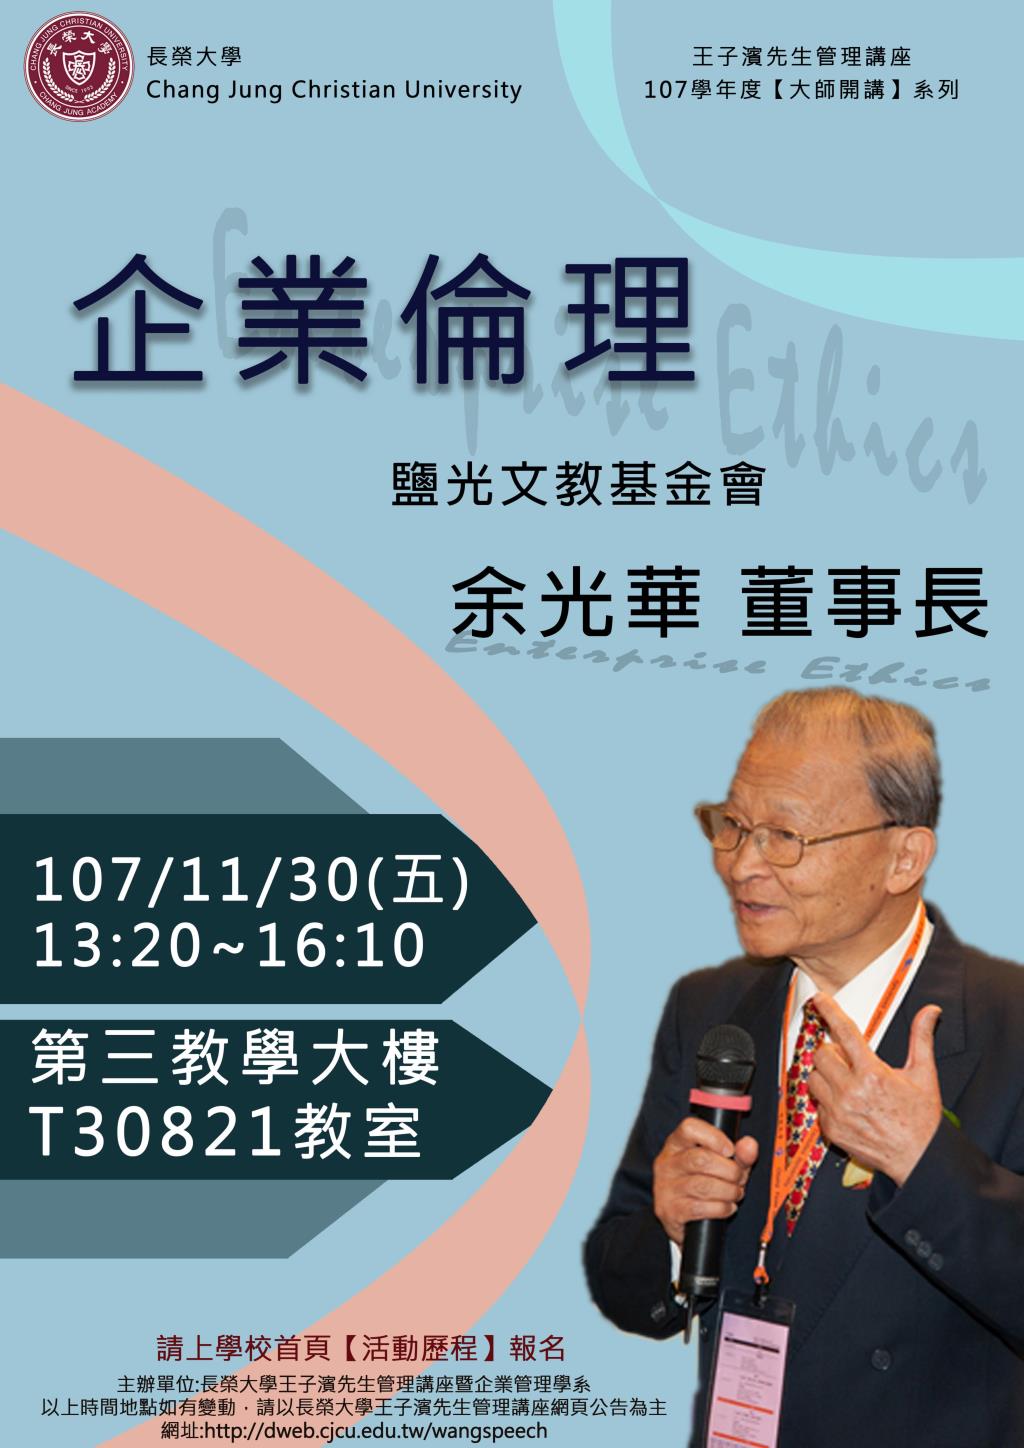 敬邀參加週五下午(11/30)王子濱先生管理講座---鹽光文教基金會 余光華  董事長